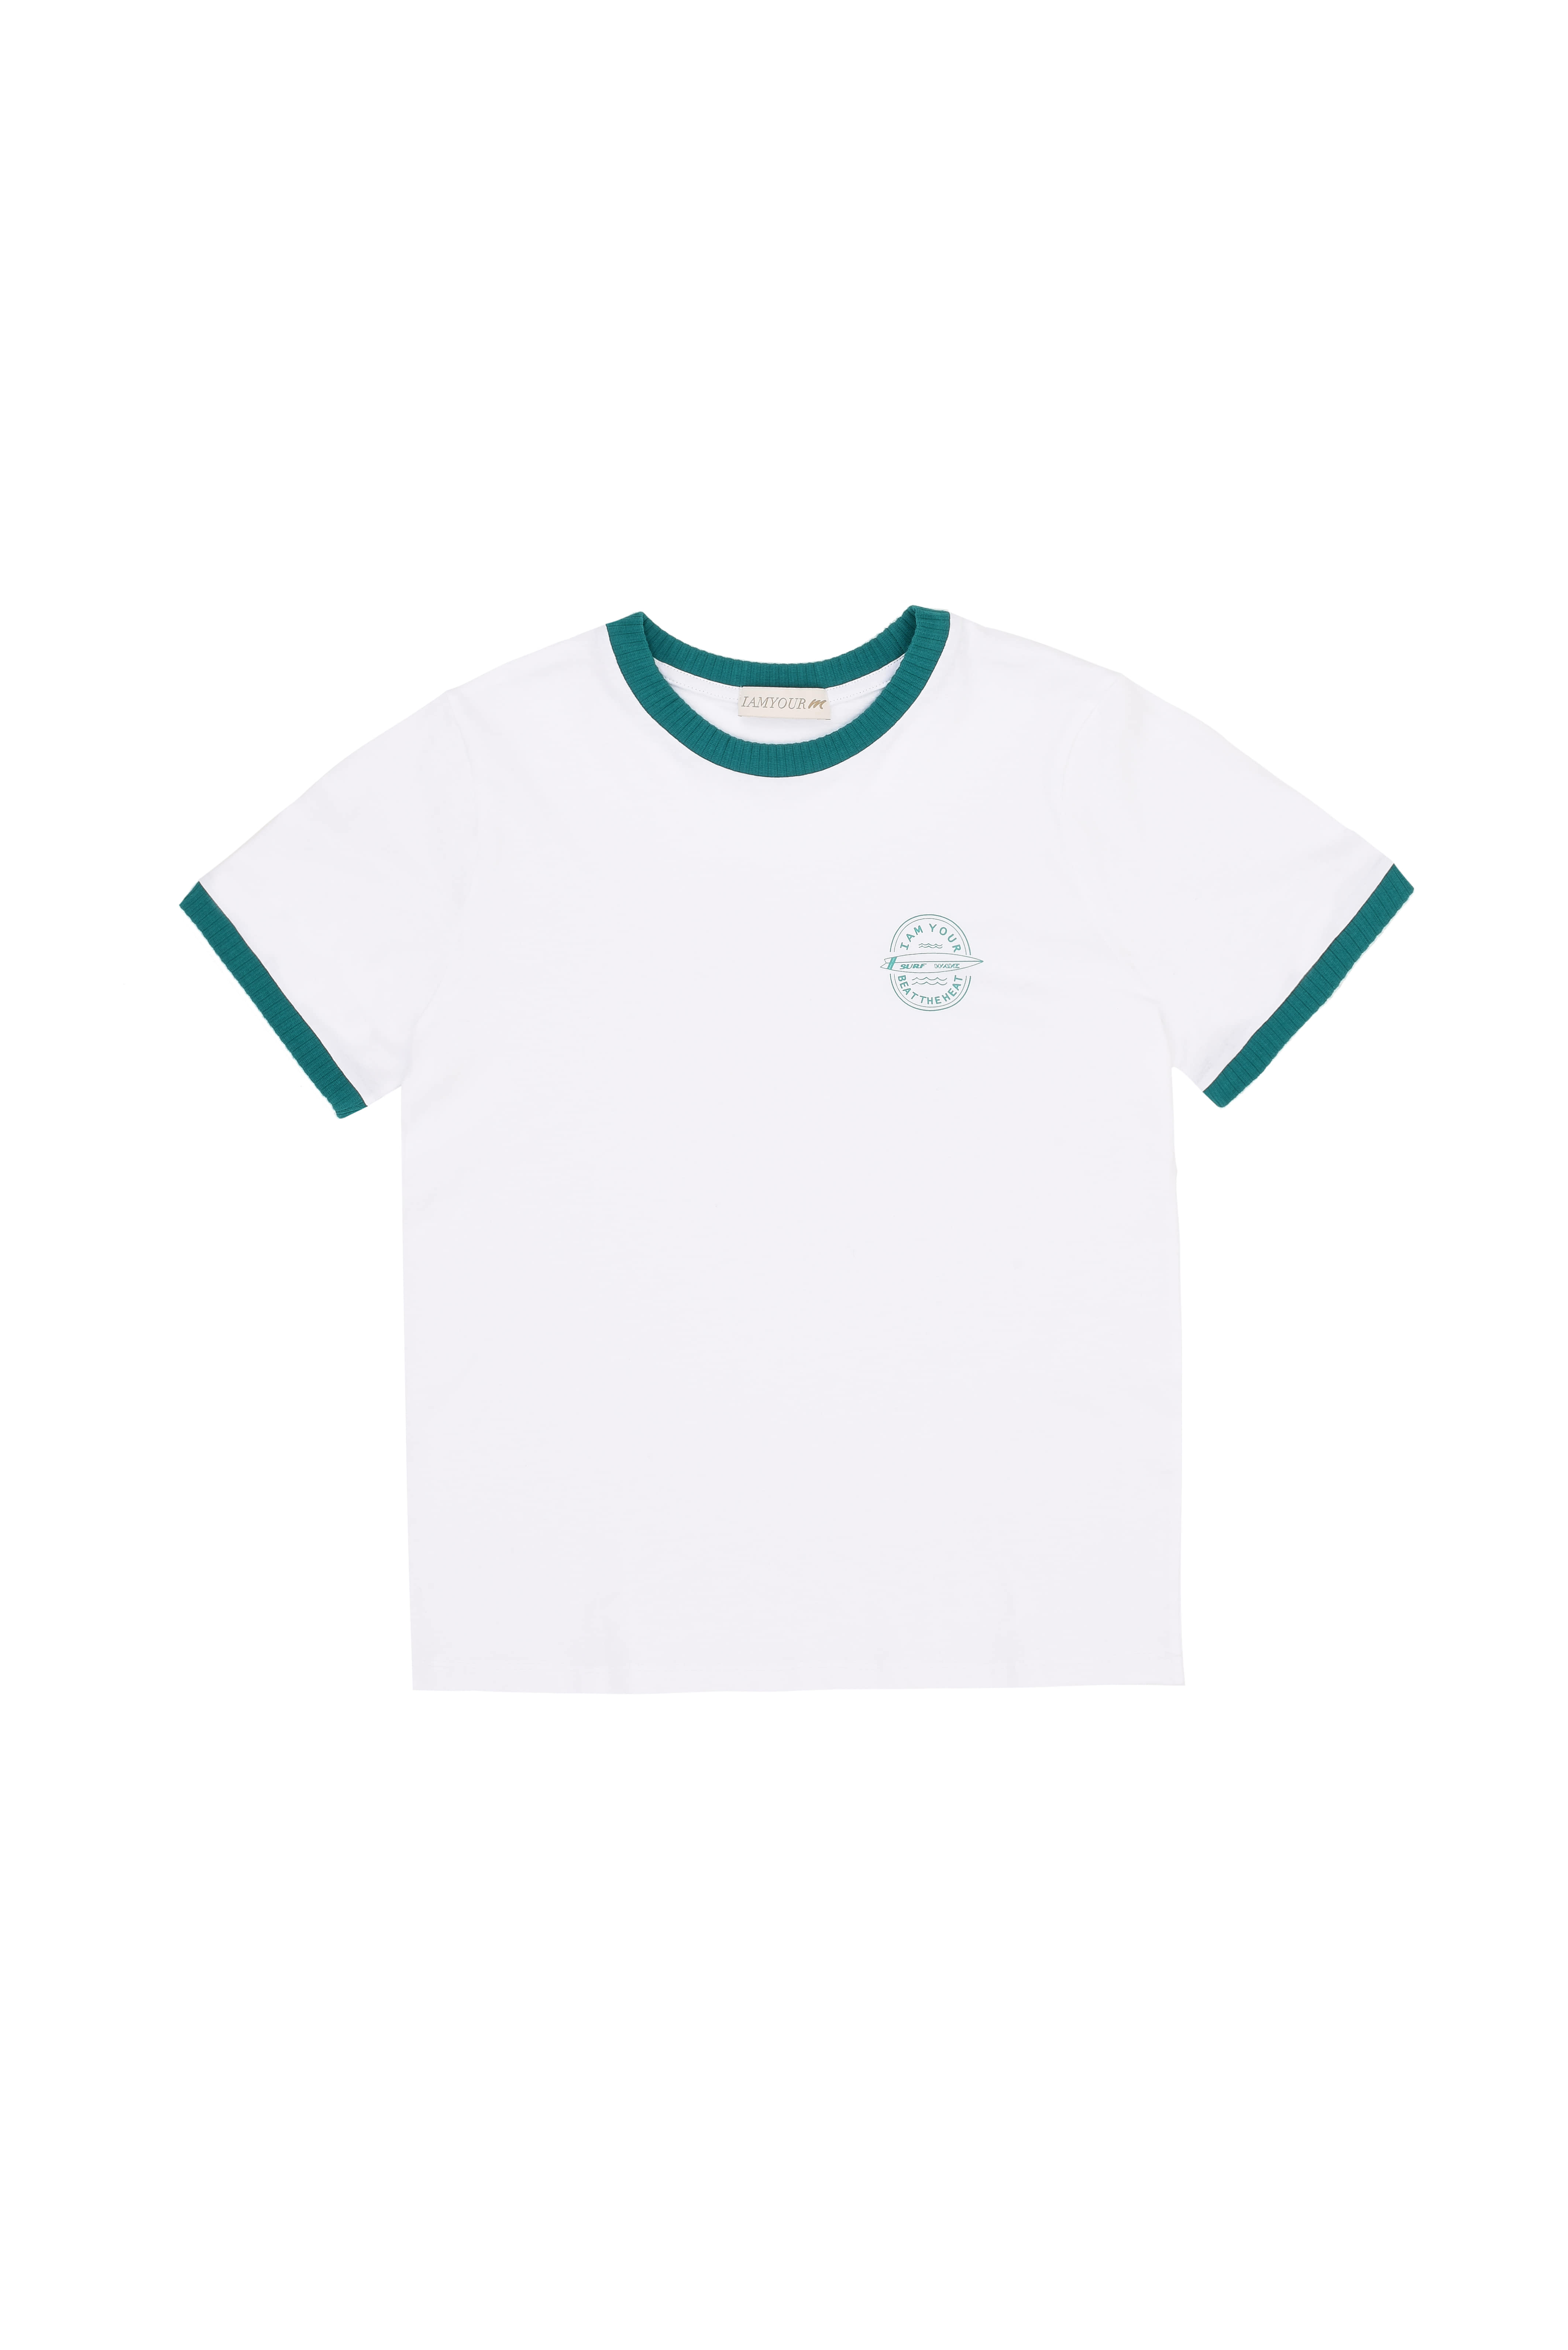 Surf wave T-shirt (green)